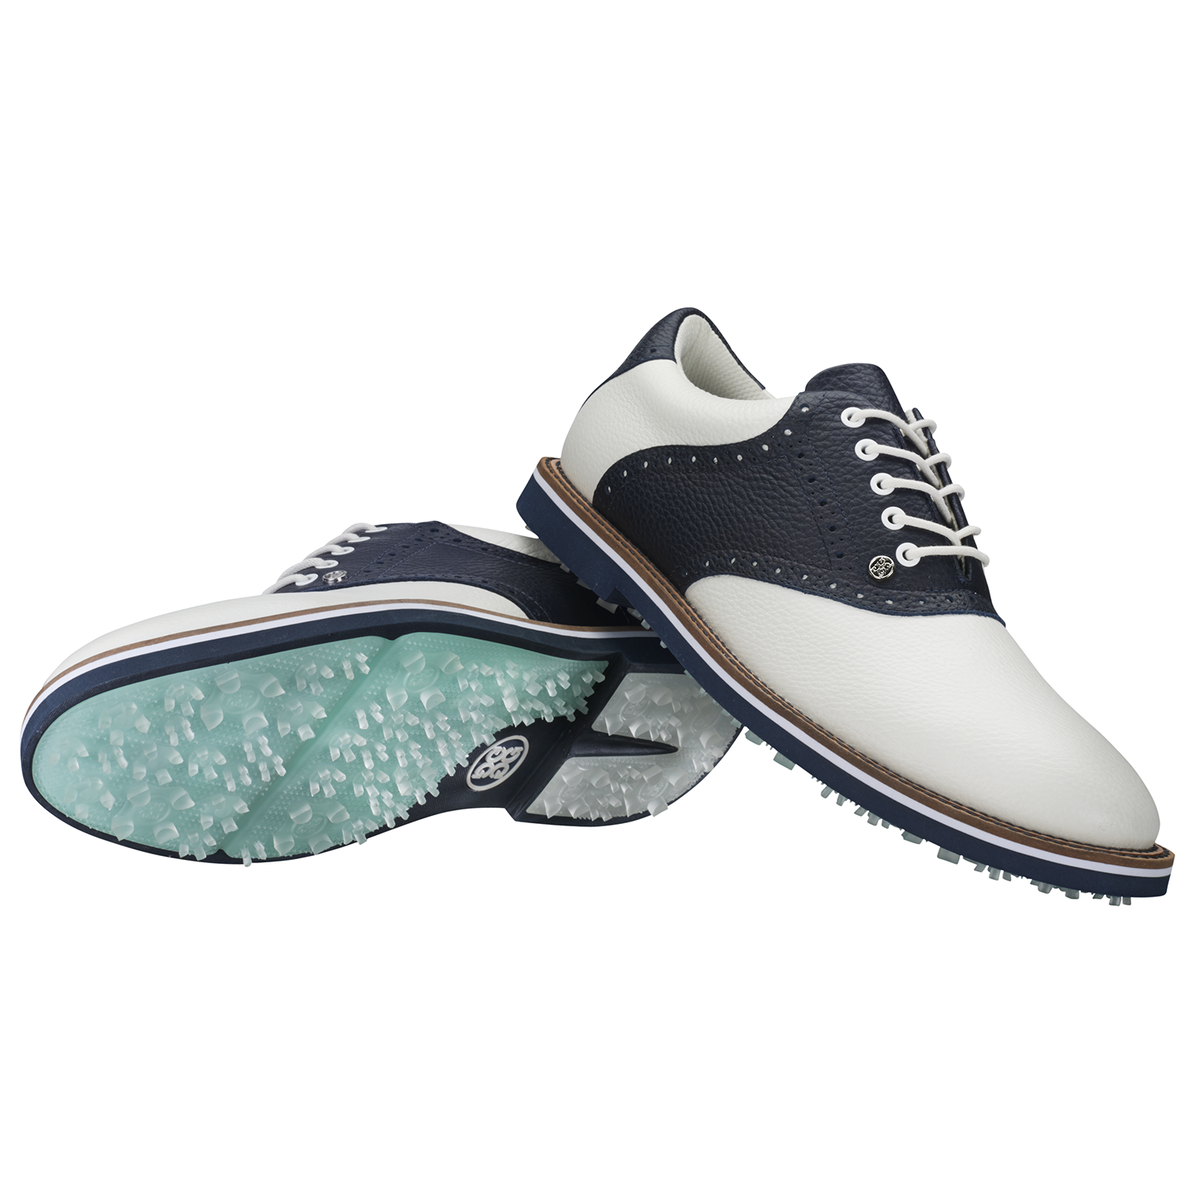 G/FORE Saddle Gallivanter Men's Golf Shoe - White/Navy | PGA TOUR ...